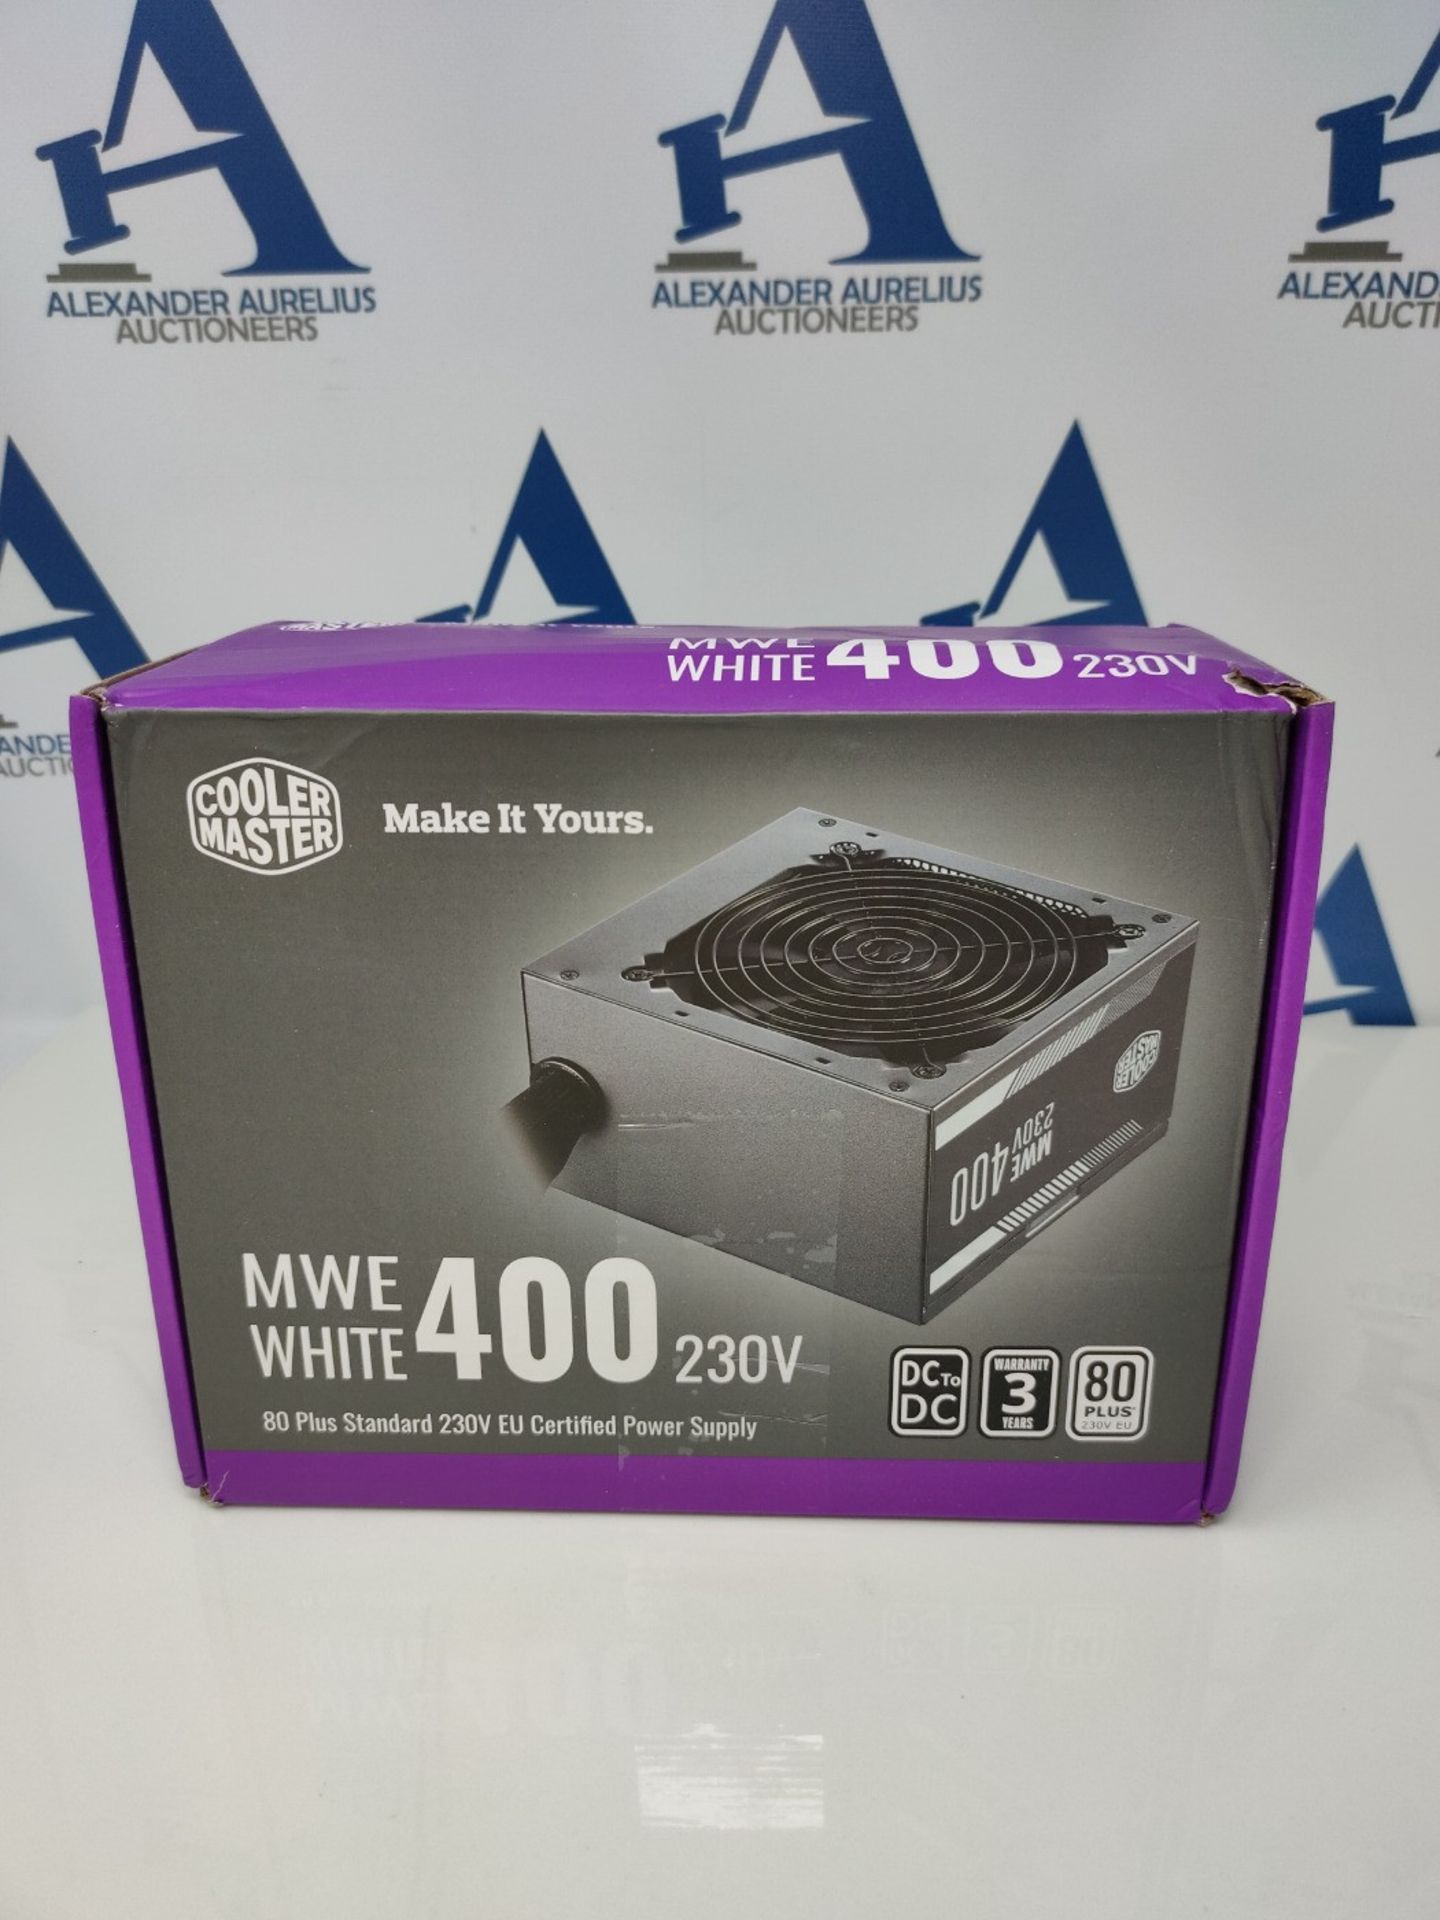 Cooler Master Alimentatore MWE 400 White 230V V2, Spina UE - 80 PLUS 230V Certificato - Image 2 of 3